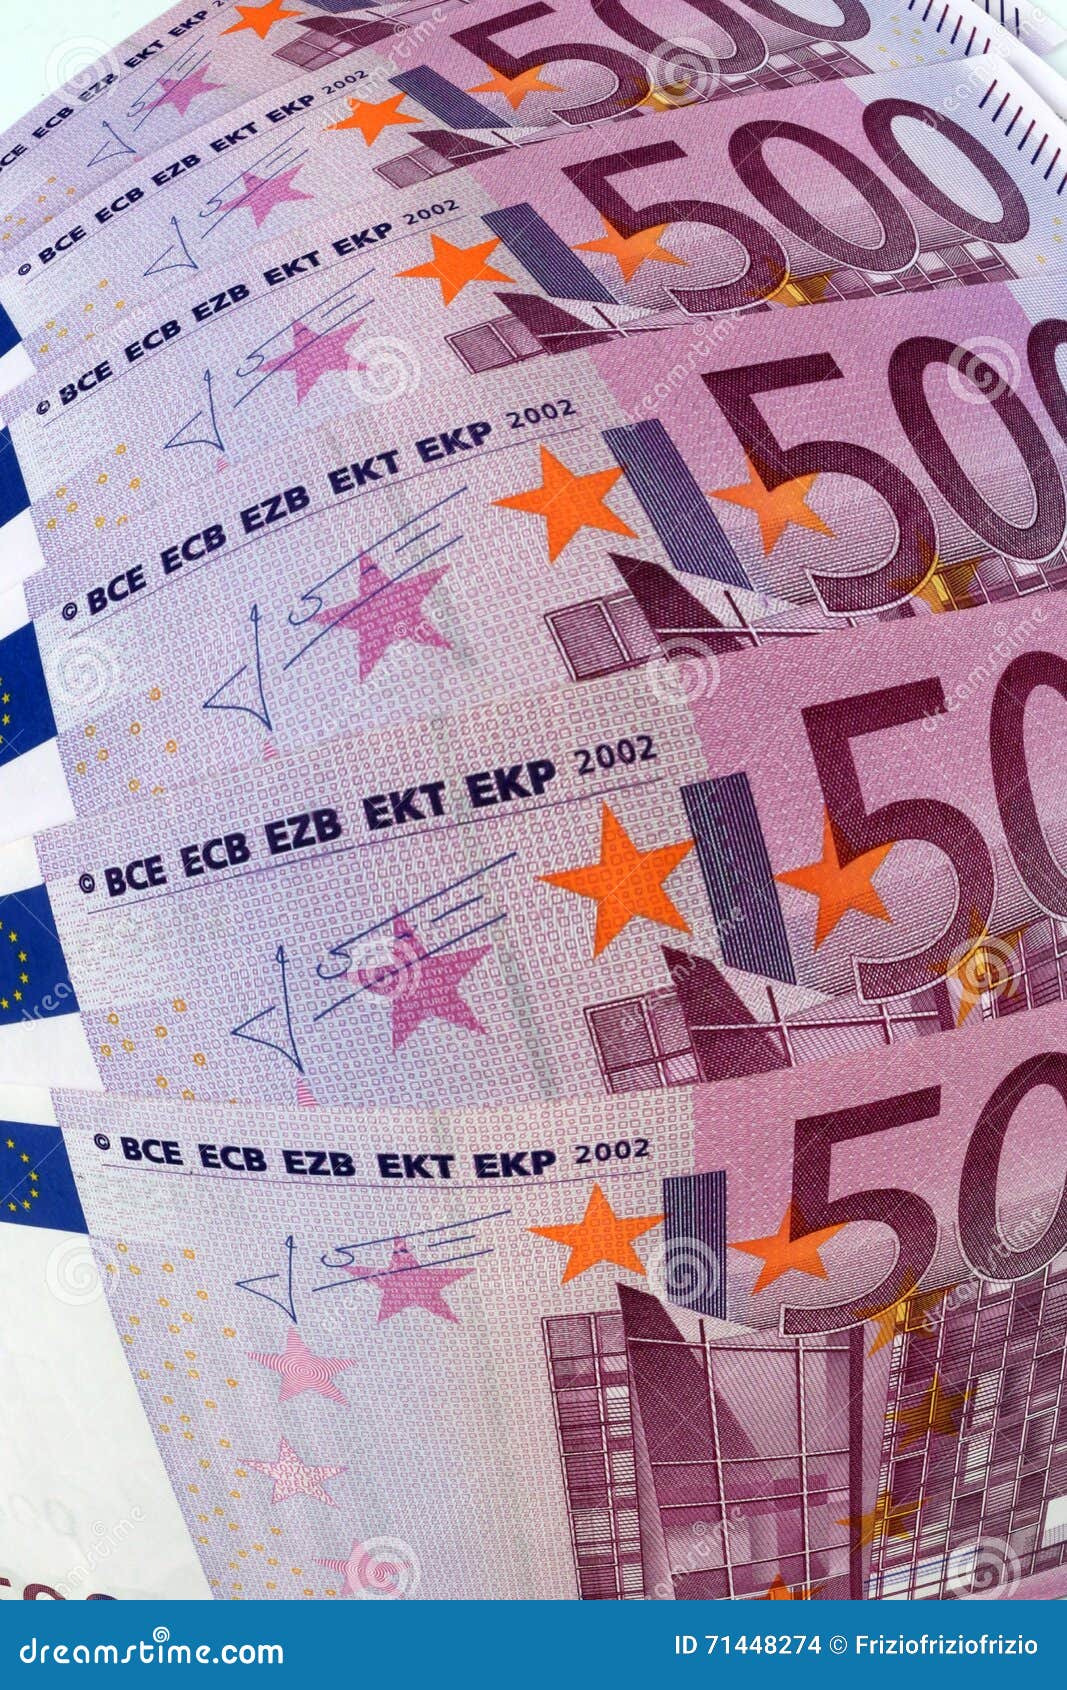 Un'elaborazione grafica di 500 euro banconote, effetto ottico della foto